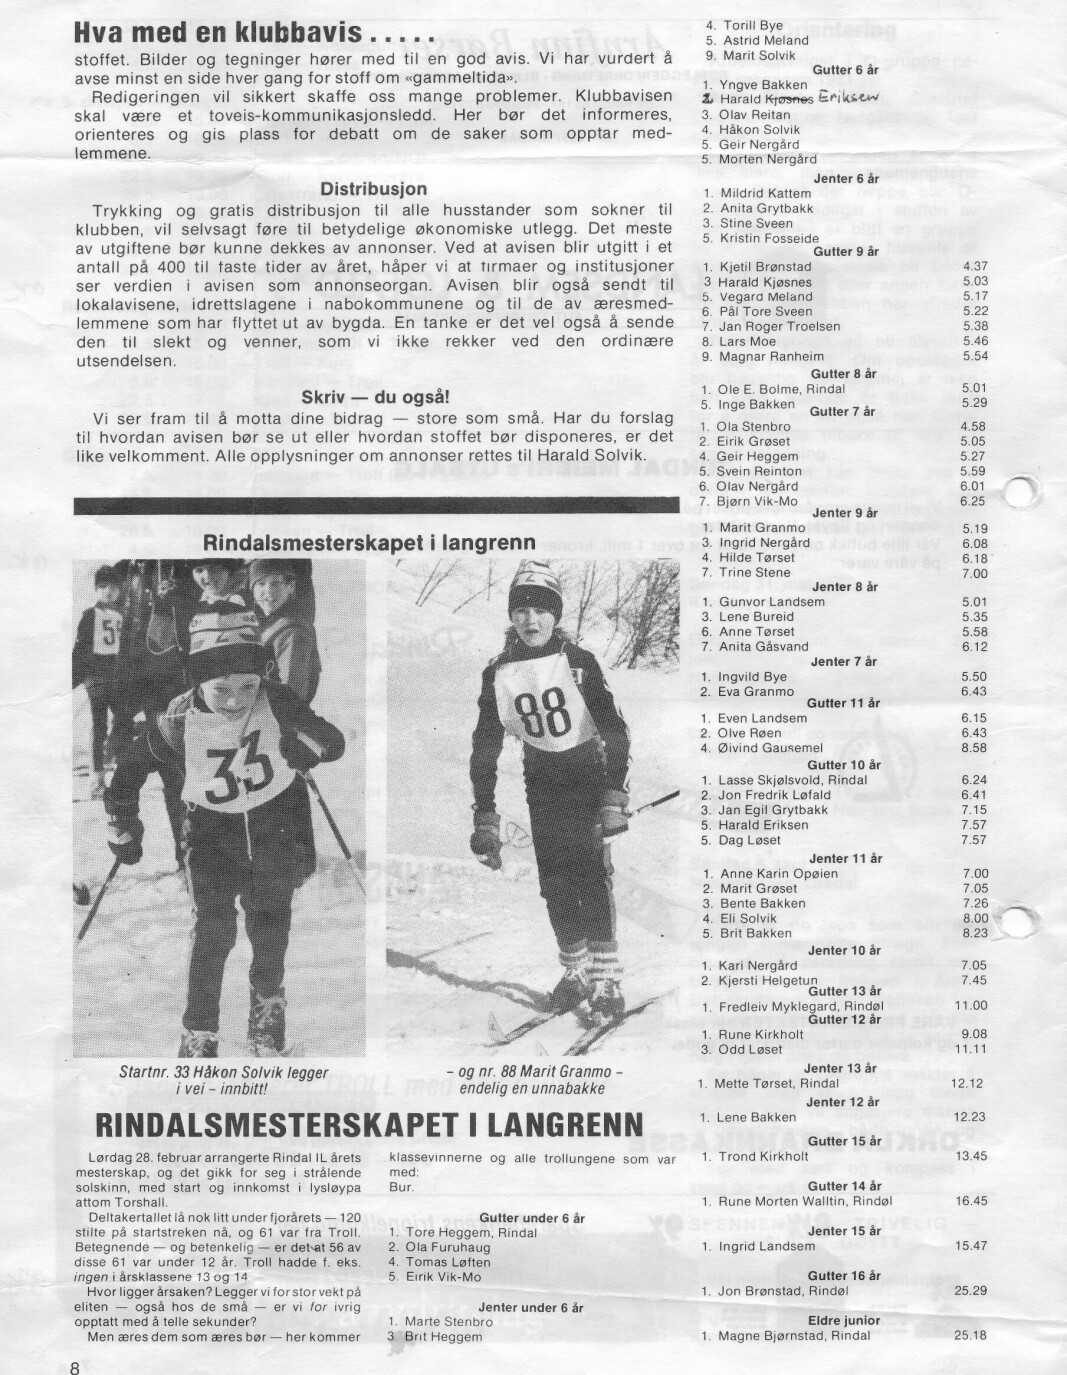 På siste side av den første utgaven av Trollposten, var det resultater fra Rindalsmesterskapet med "bare" 120 deltagere. Ett navn i klassen 5 år er korrigert, men ikke nok, det skal nok være Kjell Eriksen.